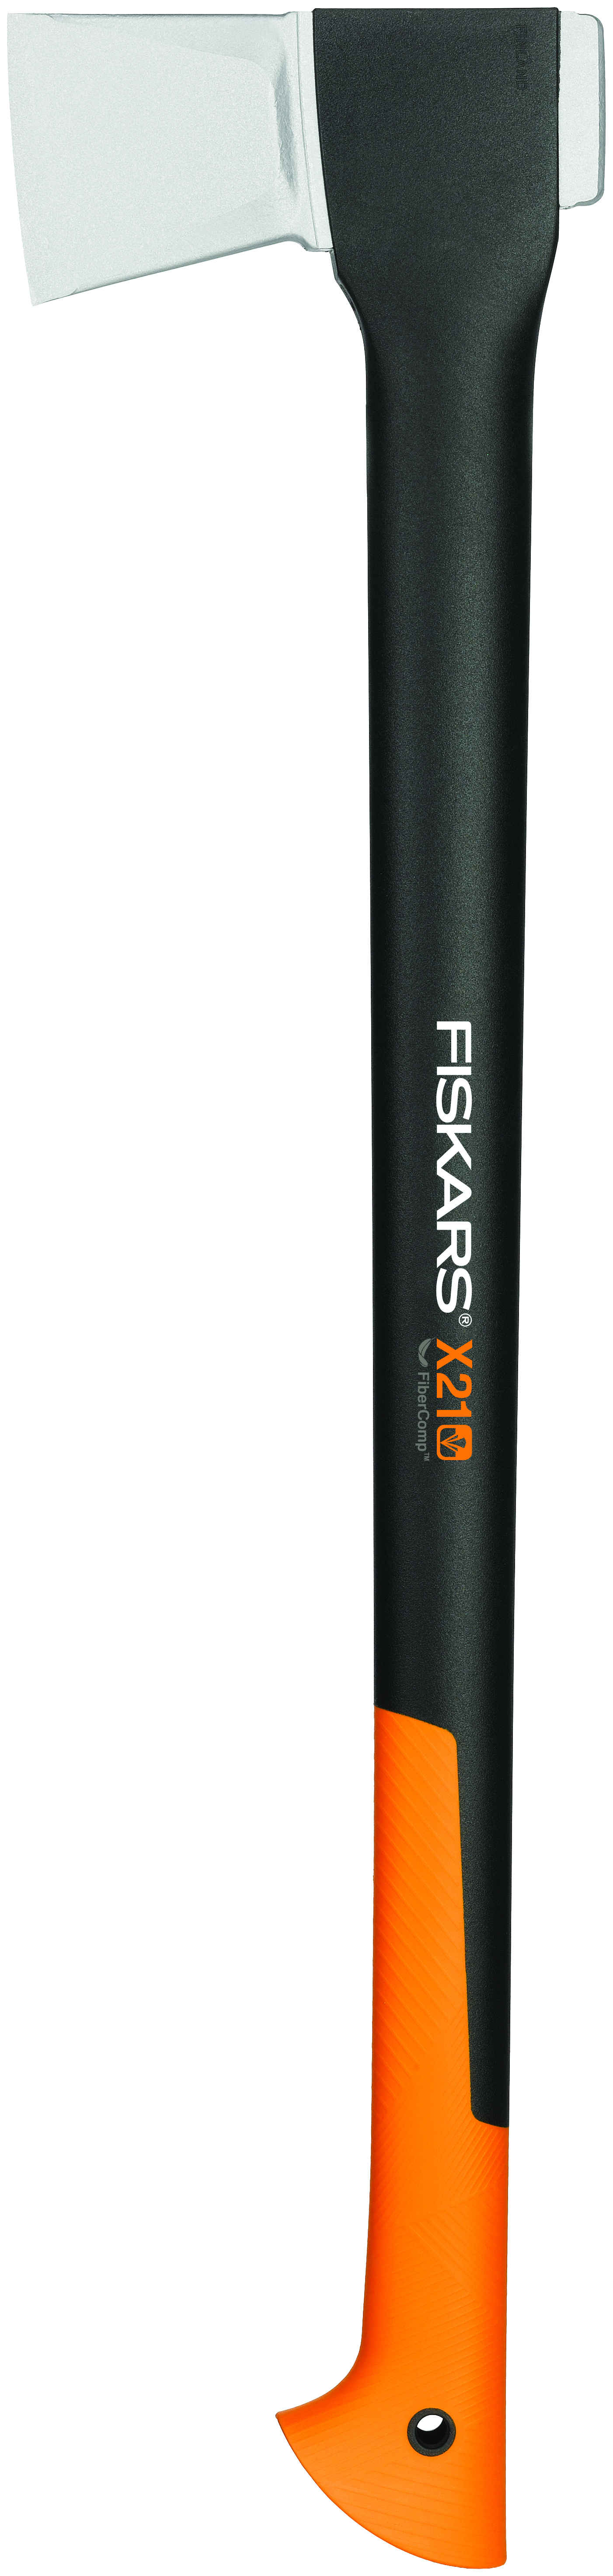 Cirvis Fiskars X21-L 709mm 1.6kg skaldisanai 1201669 (6411501224736) cirvis